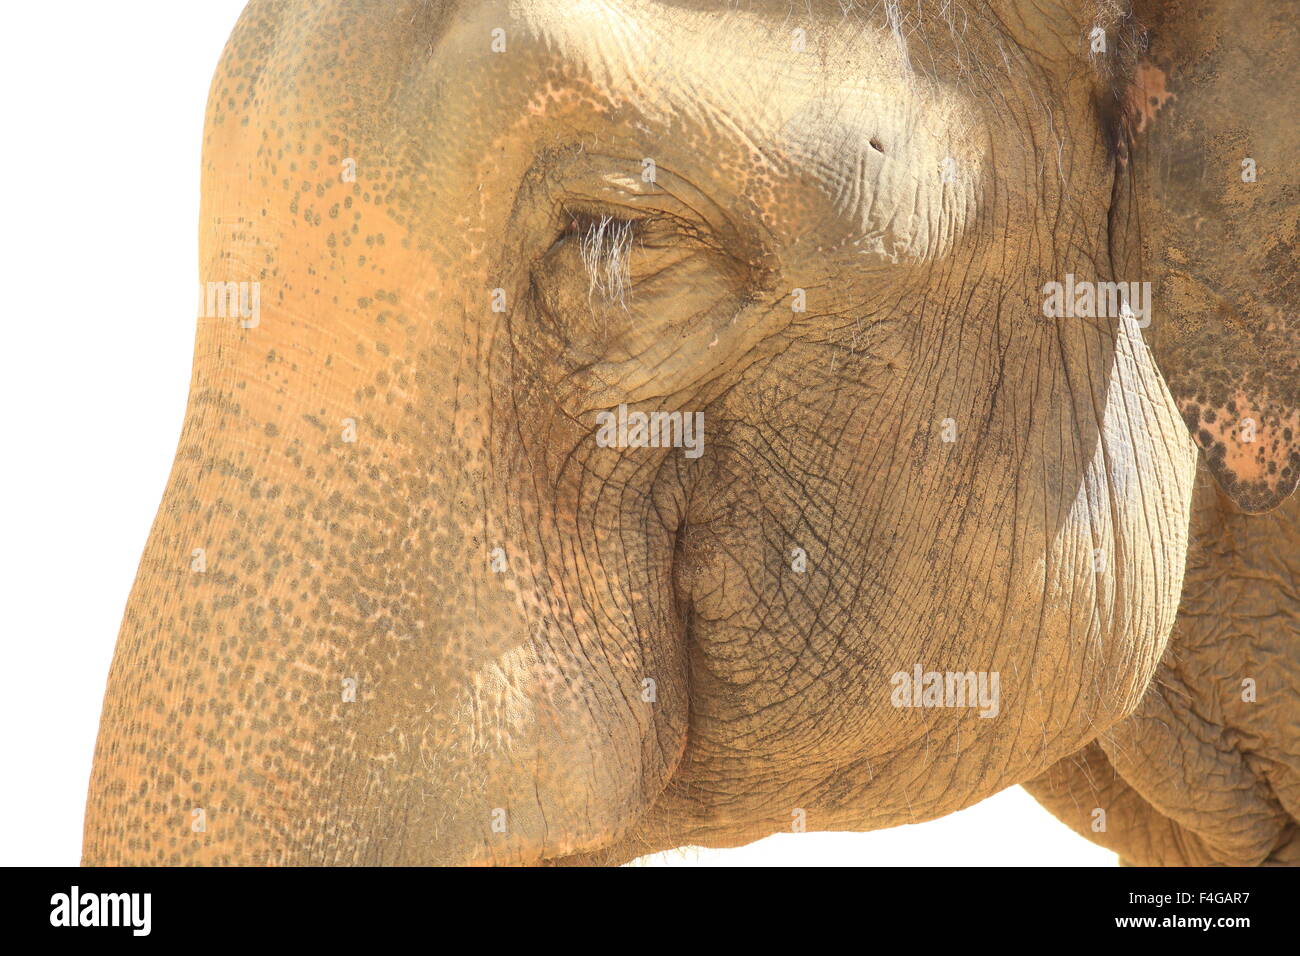 L'éléphant indien (Elephas maximus indicus) Banque D'Images